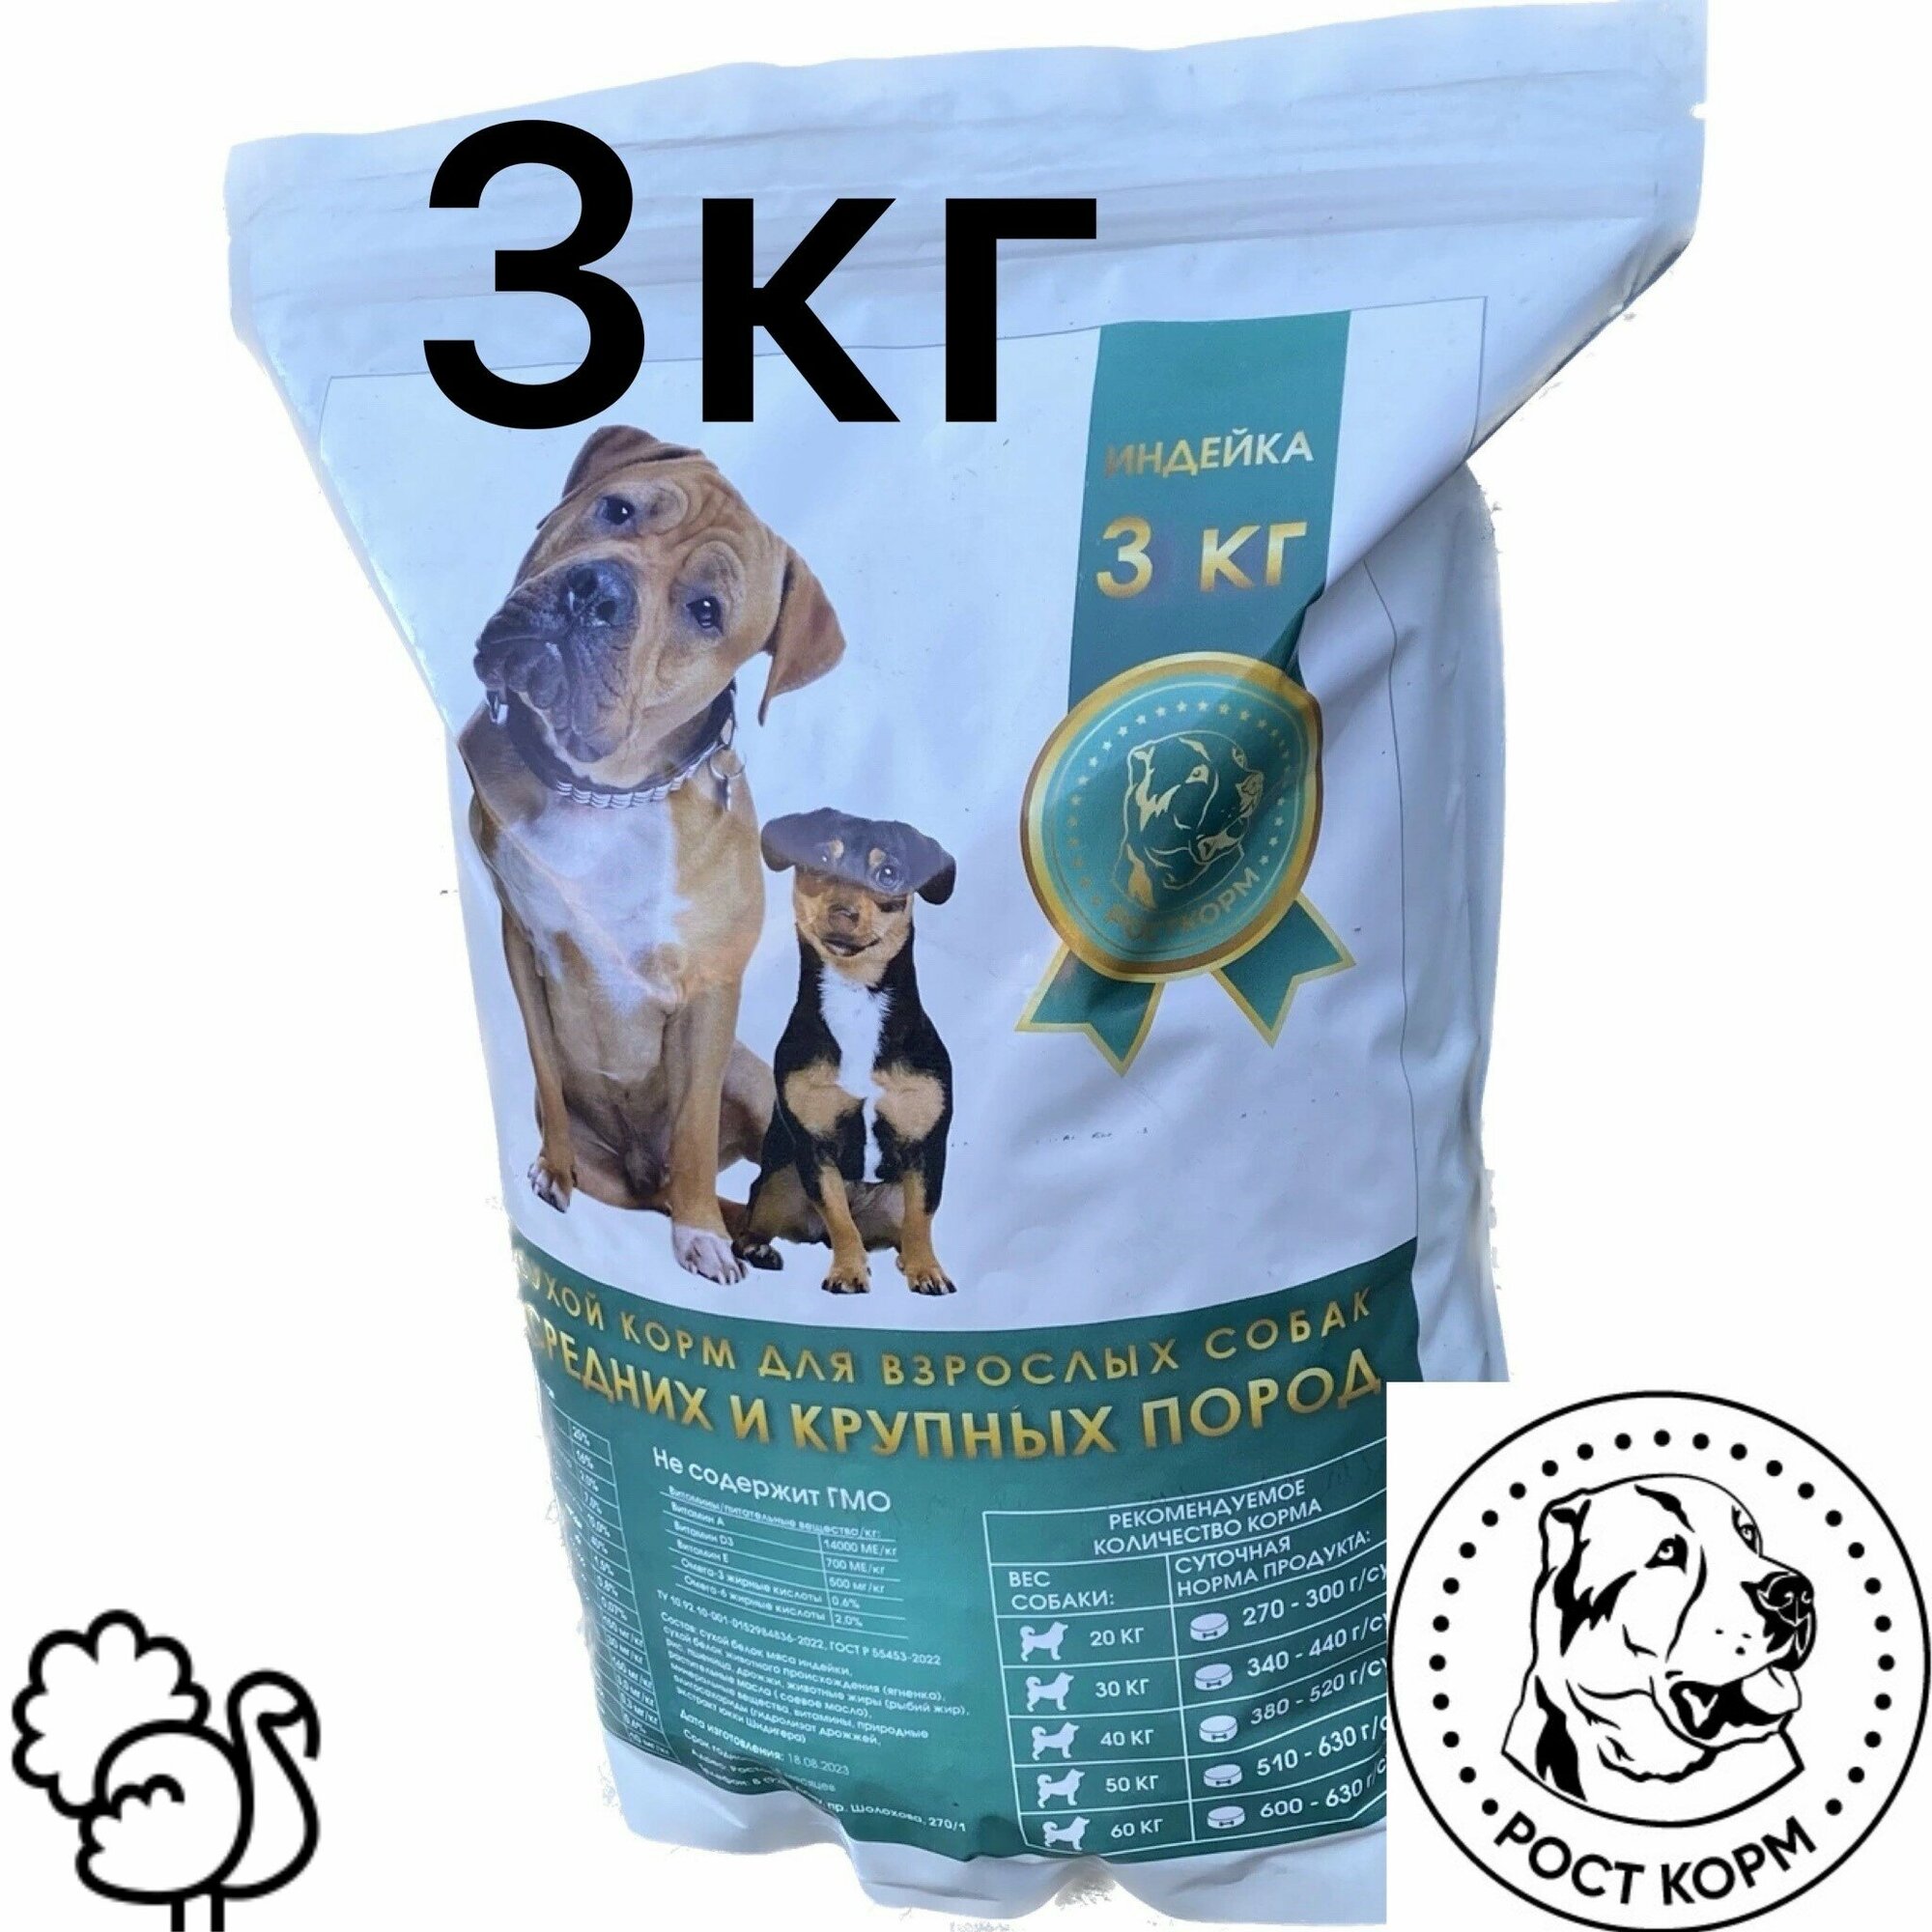 Сухой корм для взрослых собак средних и крупных пород, Супер премиум, Индейка 3 кг росткорм